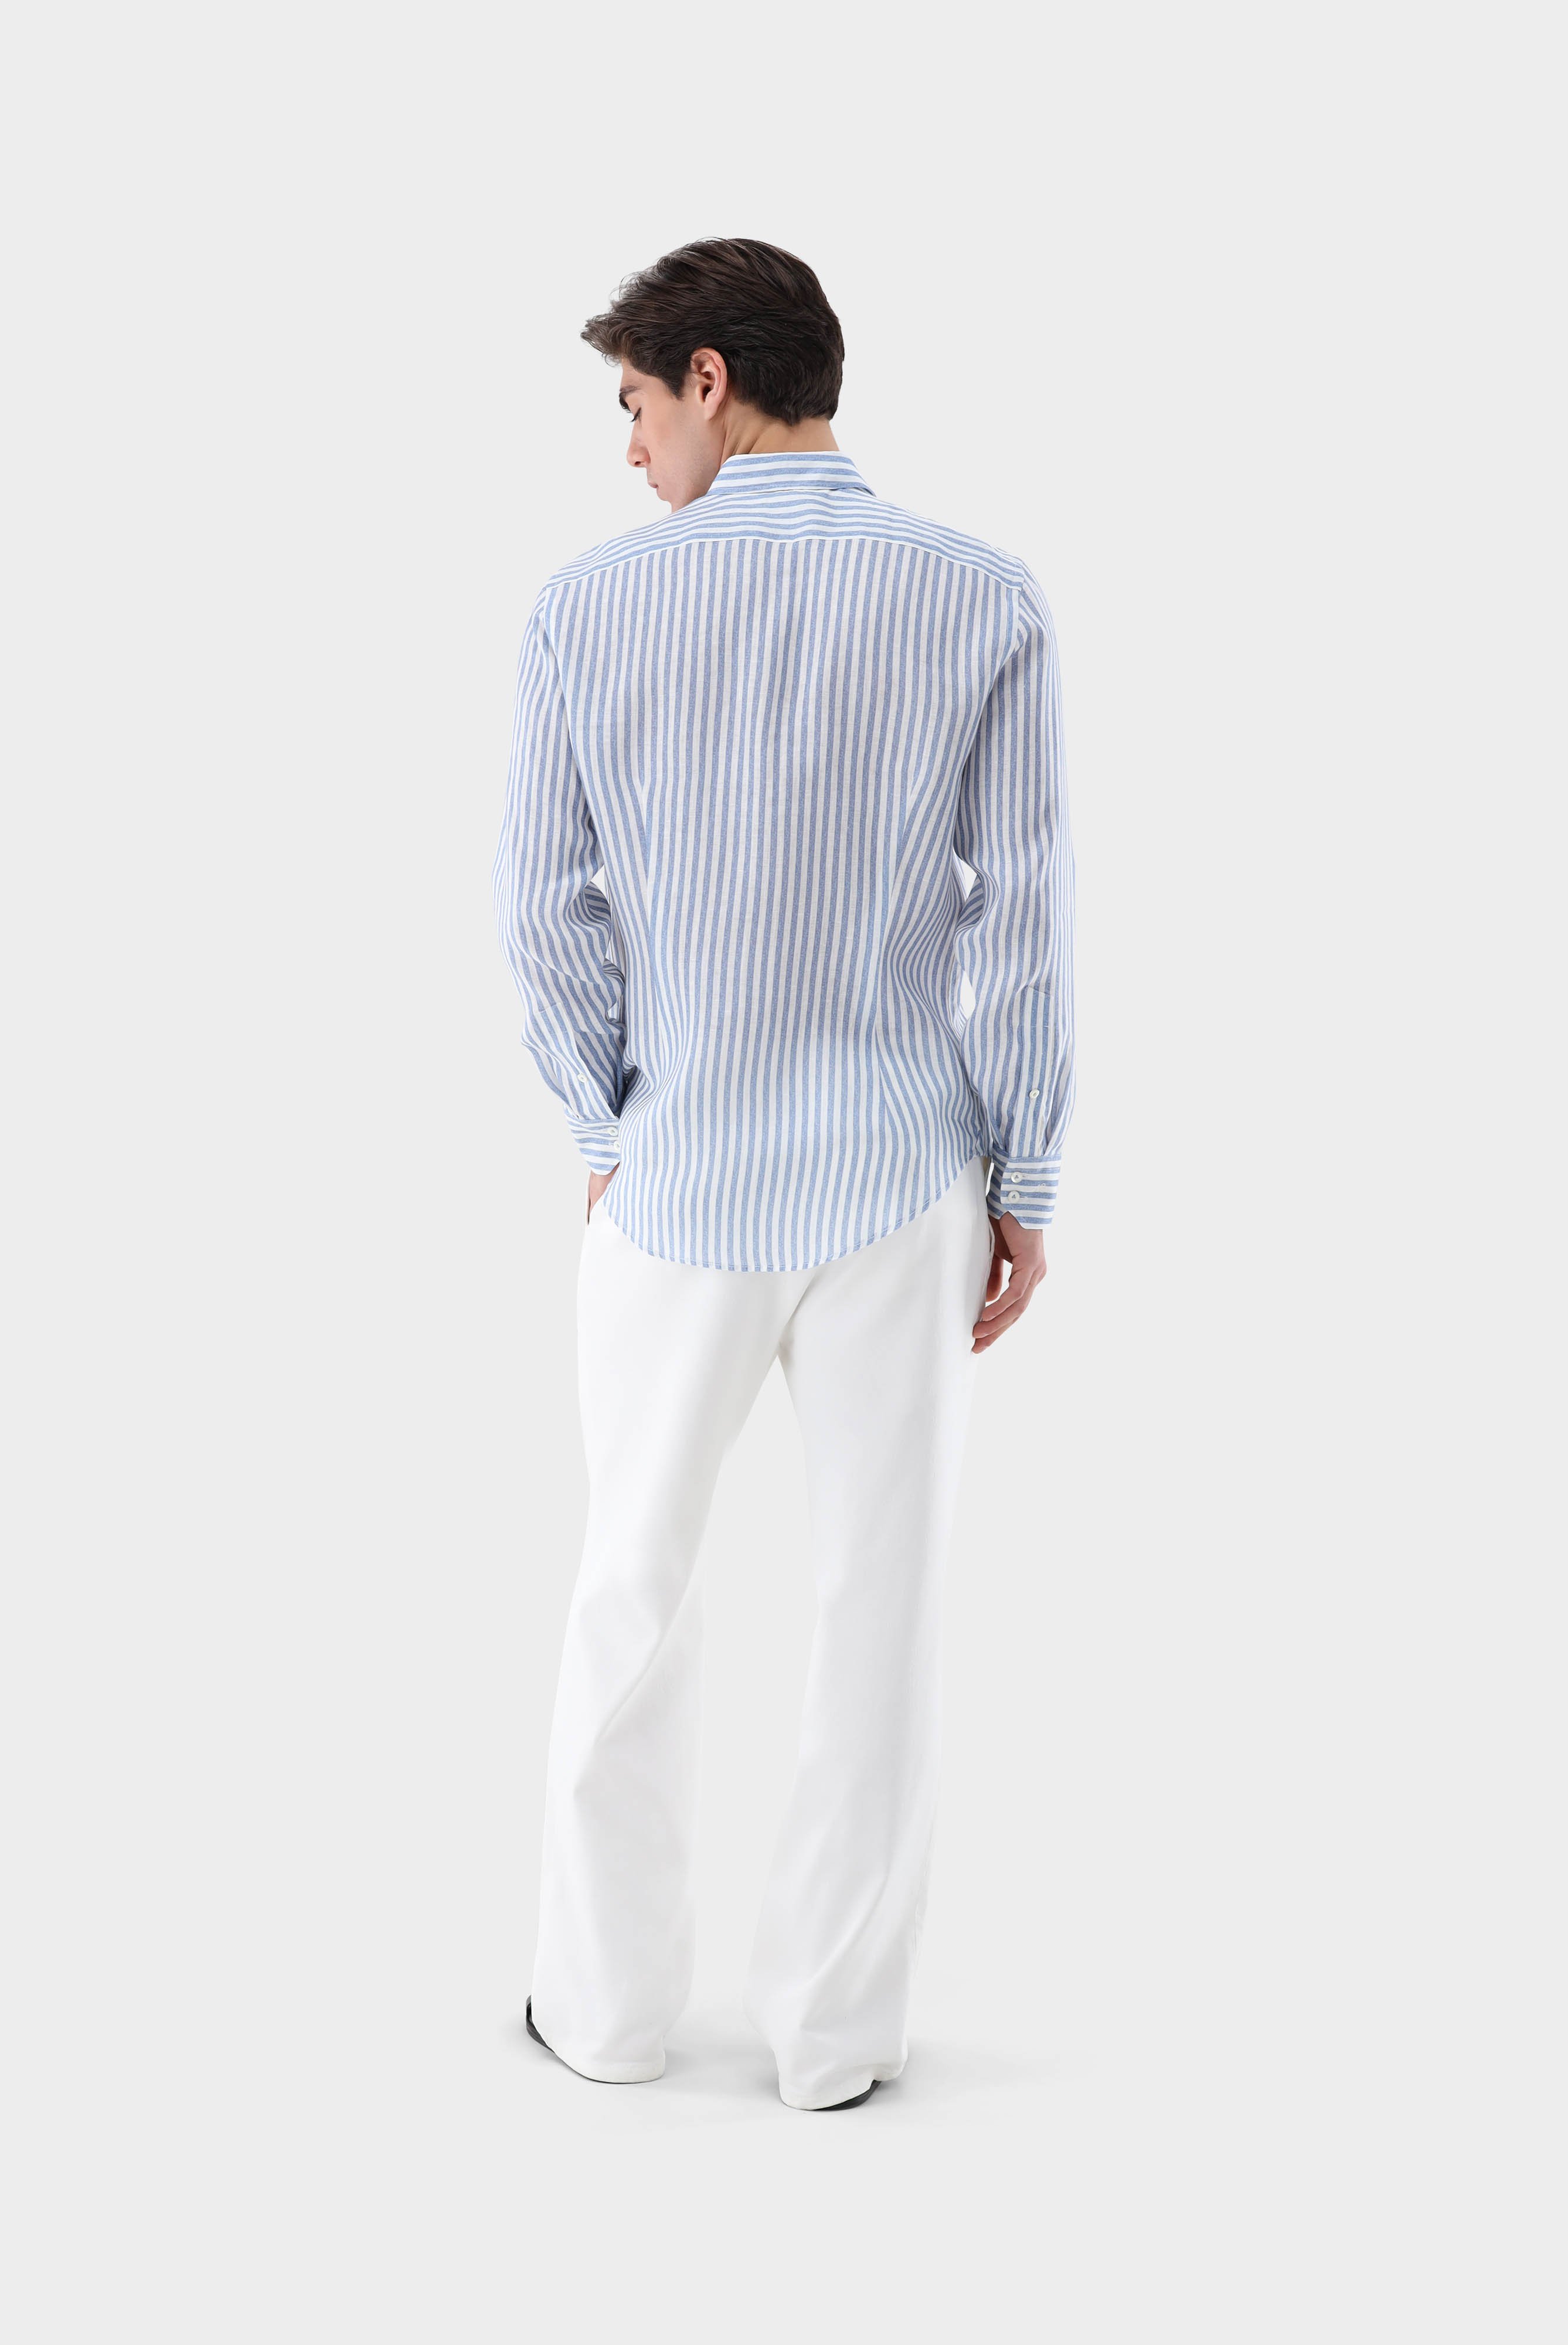 Casual Hemden+Leinenhemd mit Streifen-Druck Tailor Fit+20.2013.9V.170352.740.40